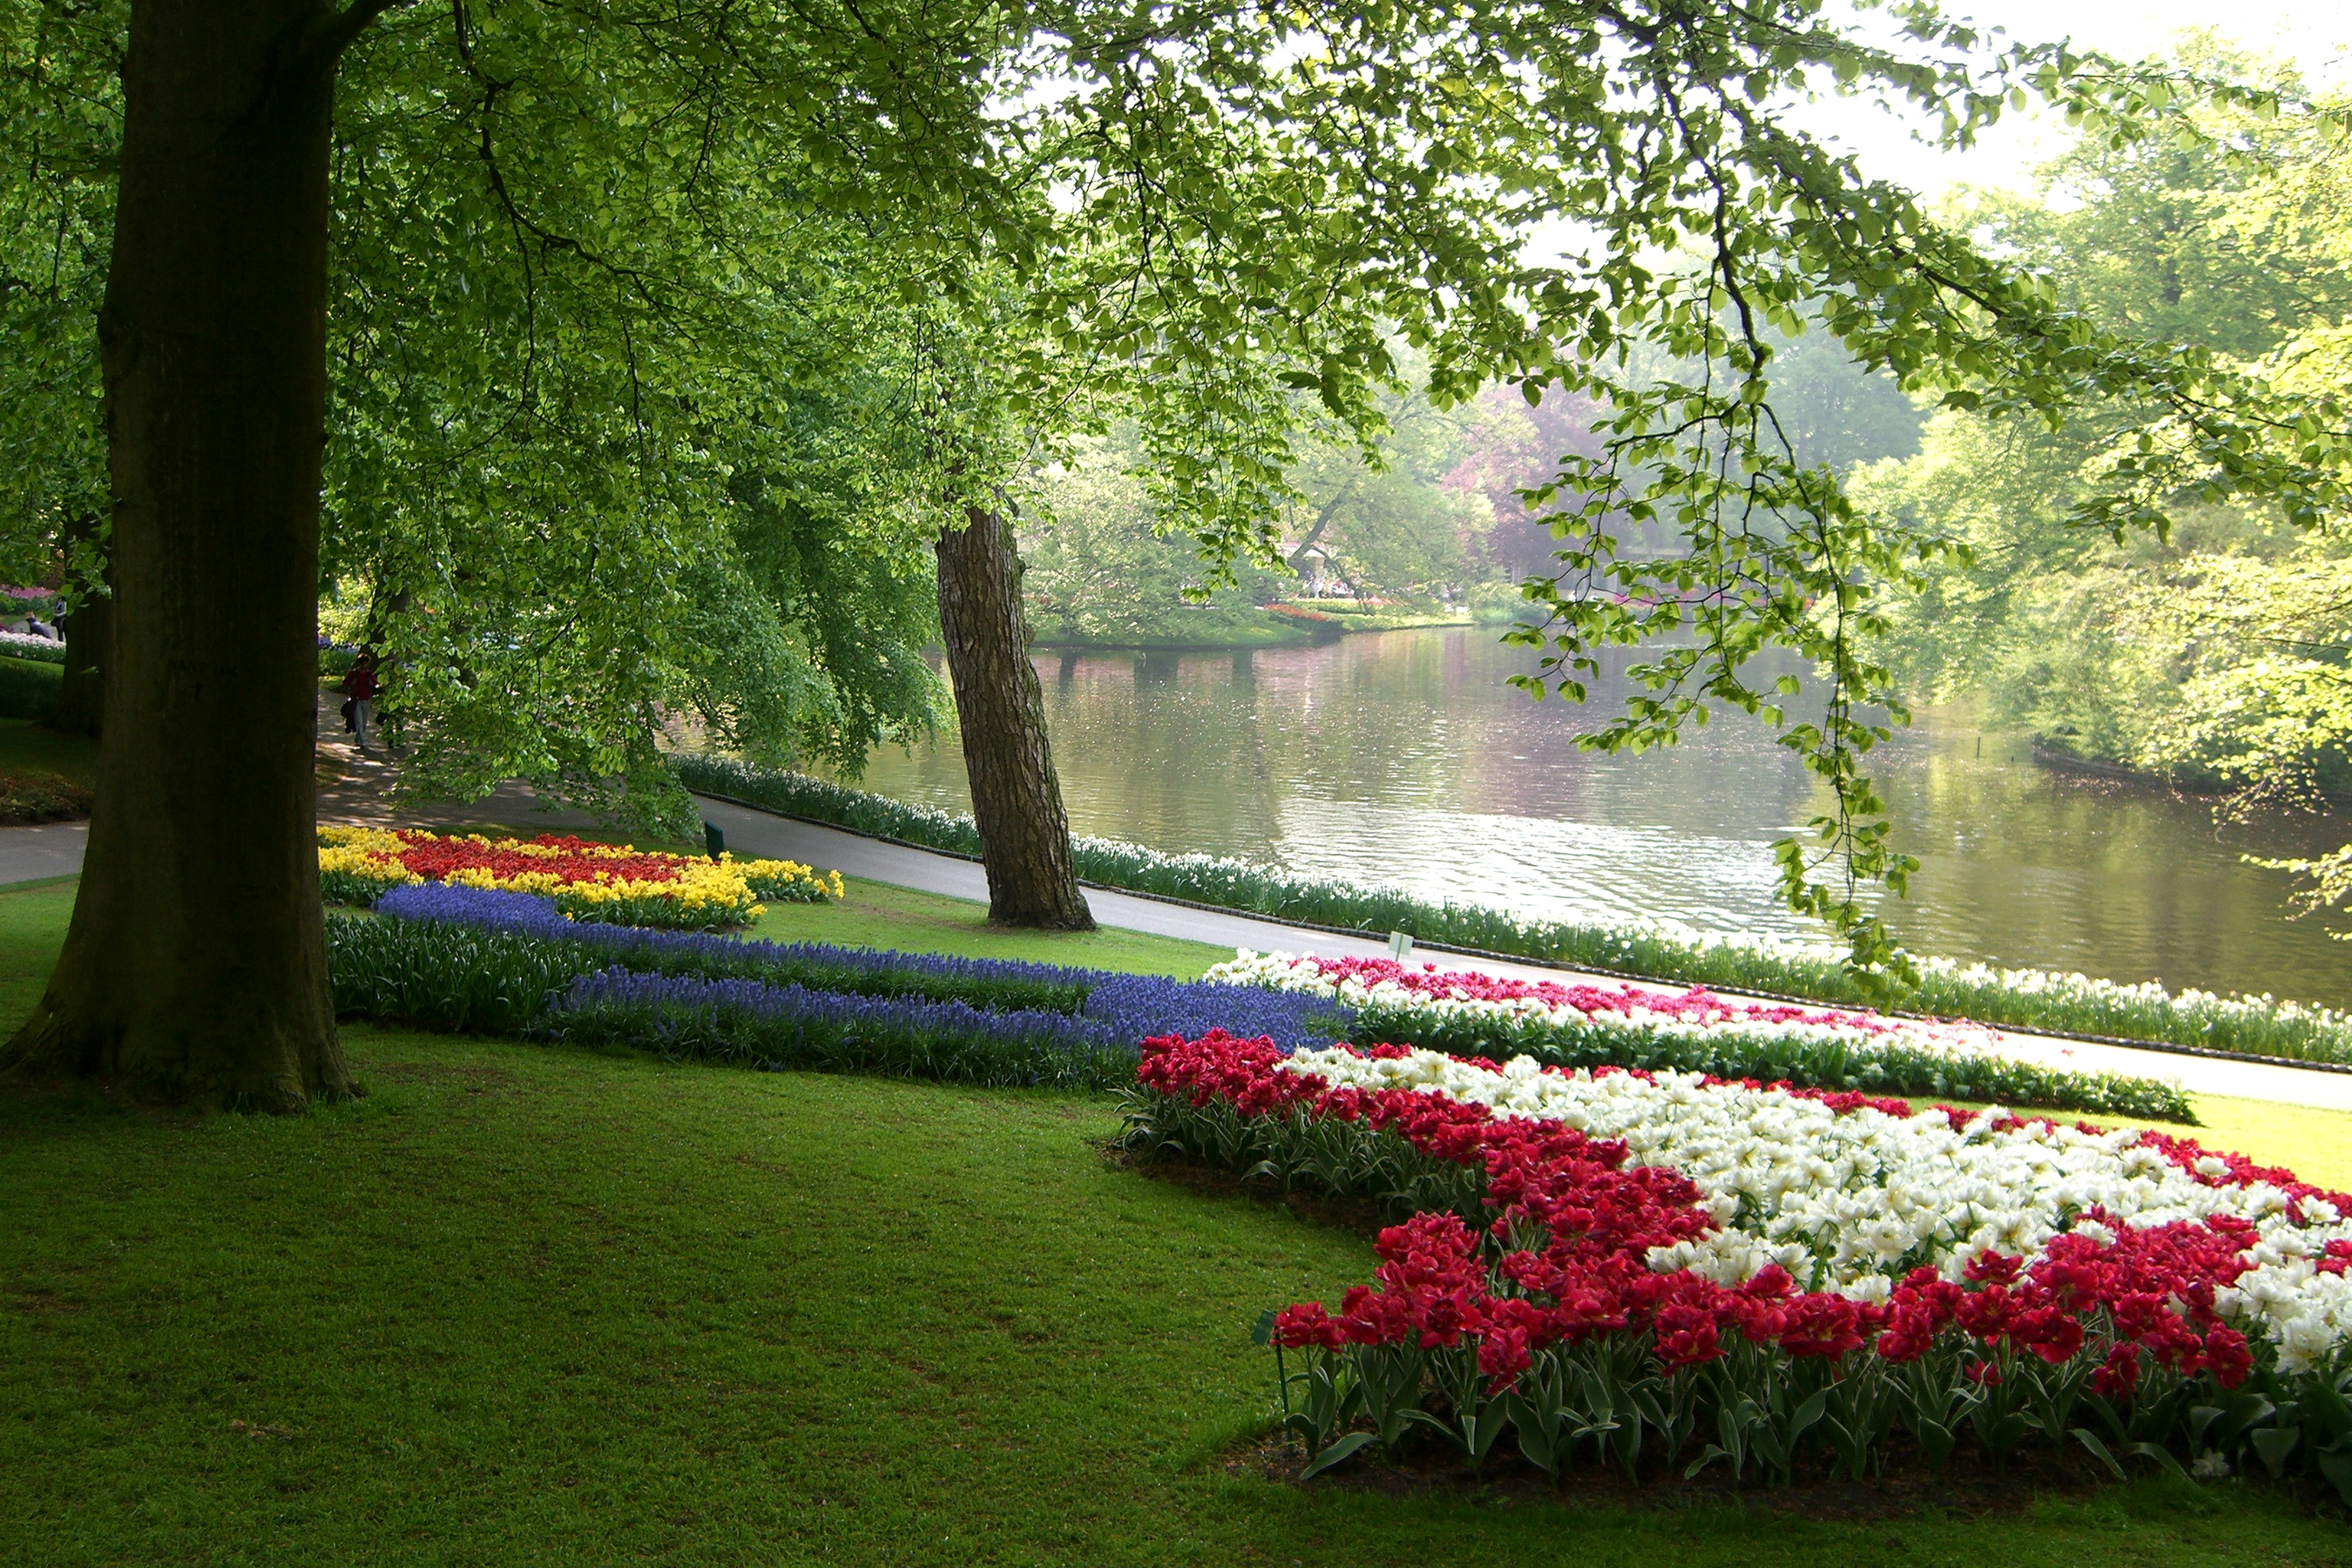 Лето парк. Кёкенхоф Нидерланды водоем. Парк тюльпанов в Голландии пруд. Кёкенхоф всемирно известный Королевский парк цветов в Нидерландах. Кёкенхоф с деревьями.